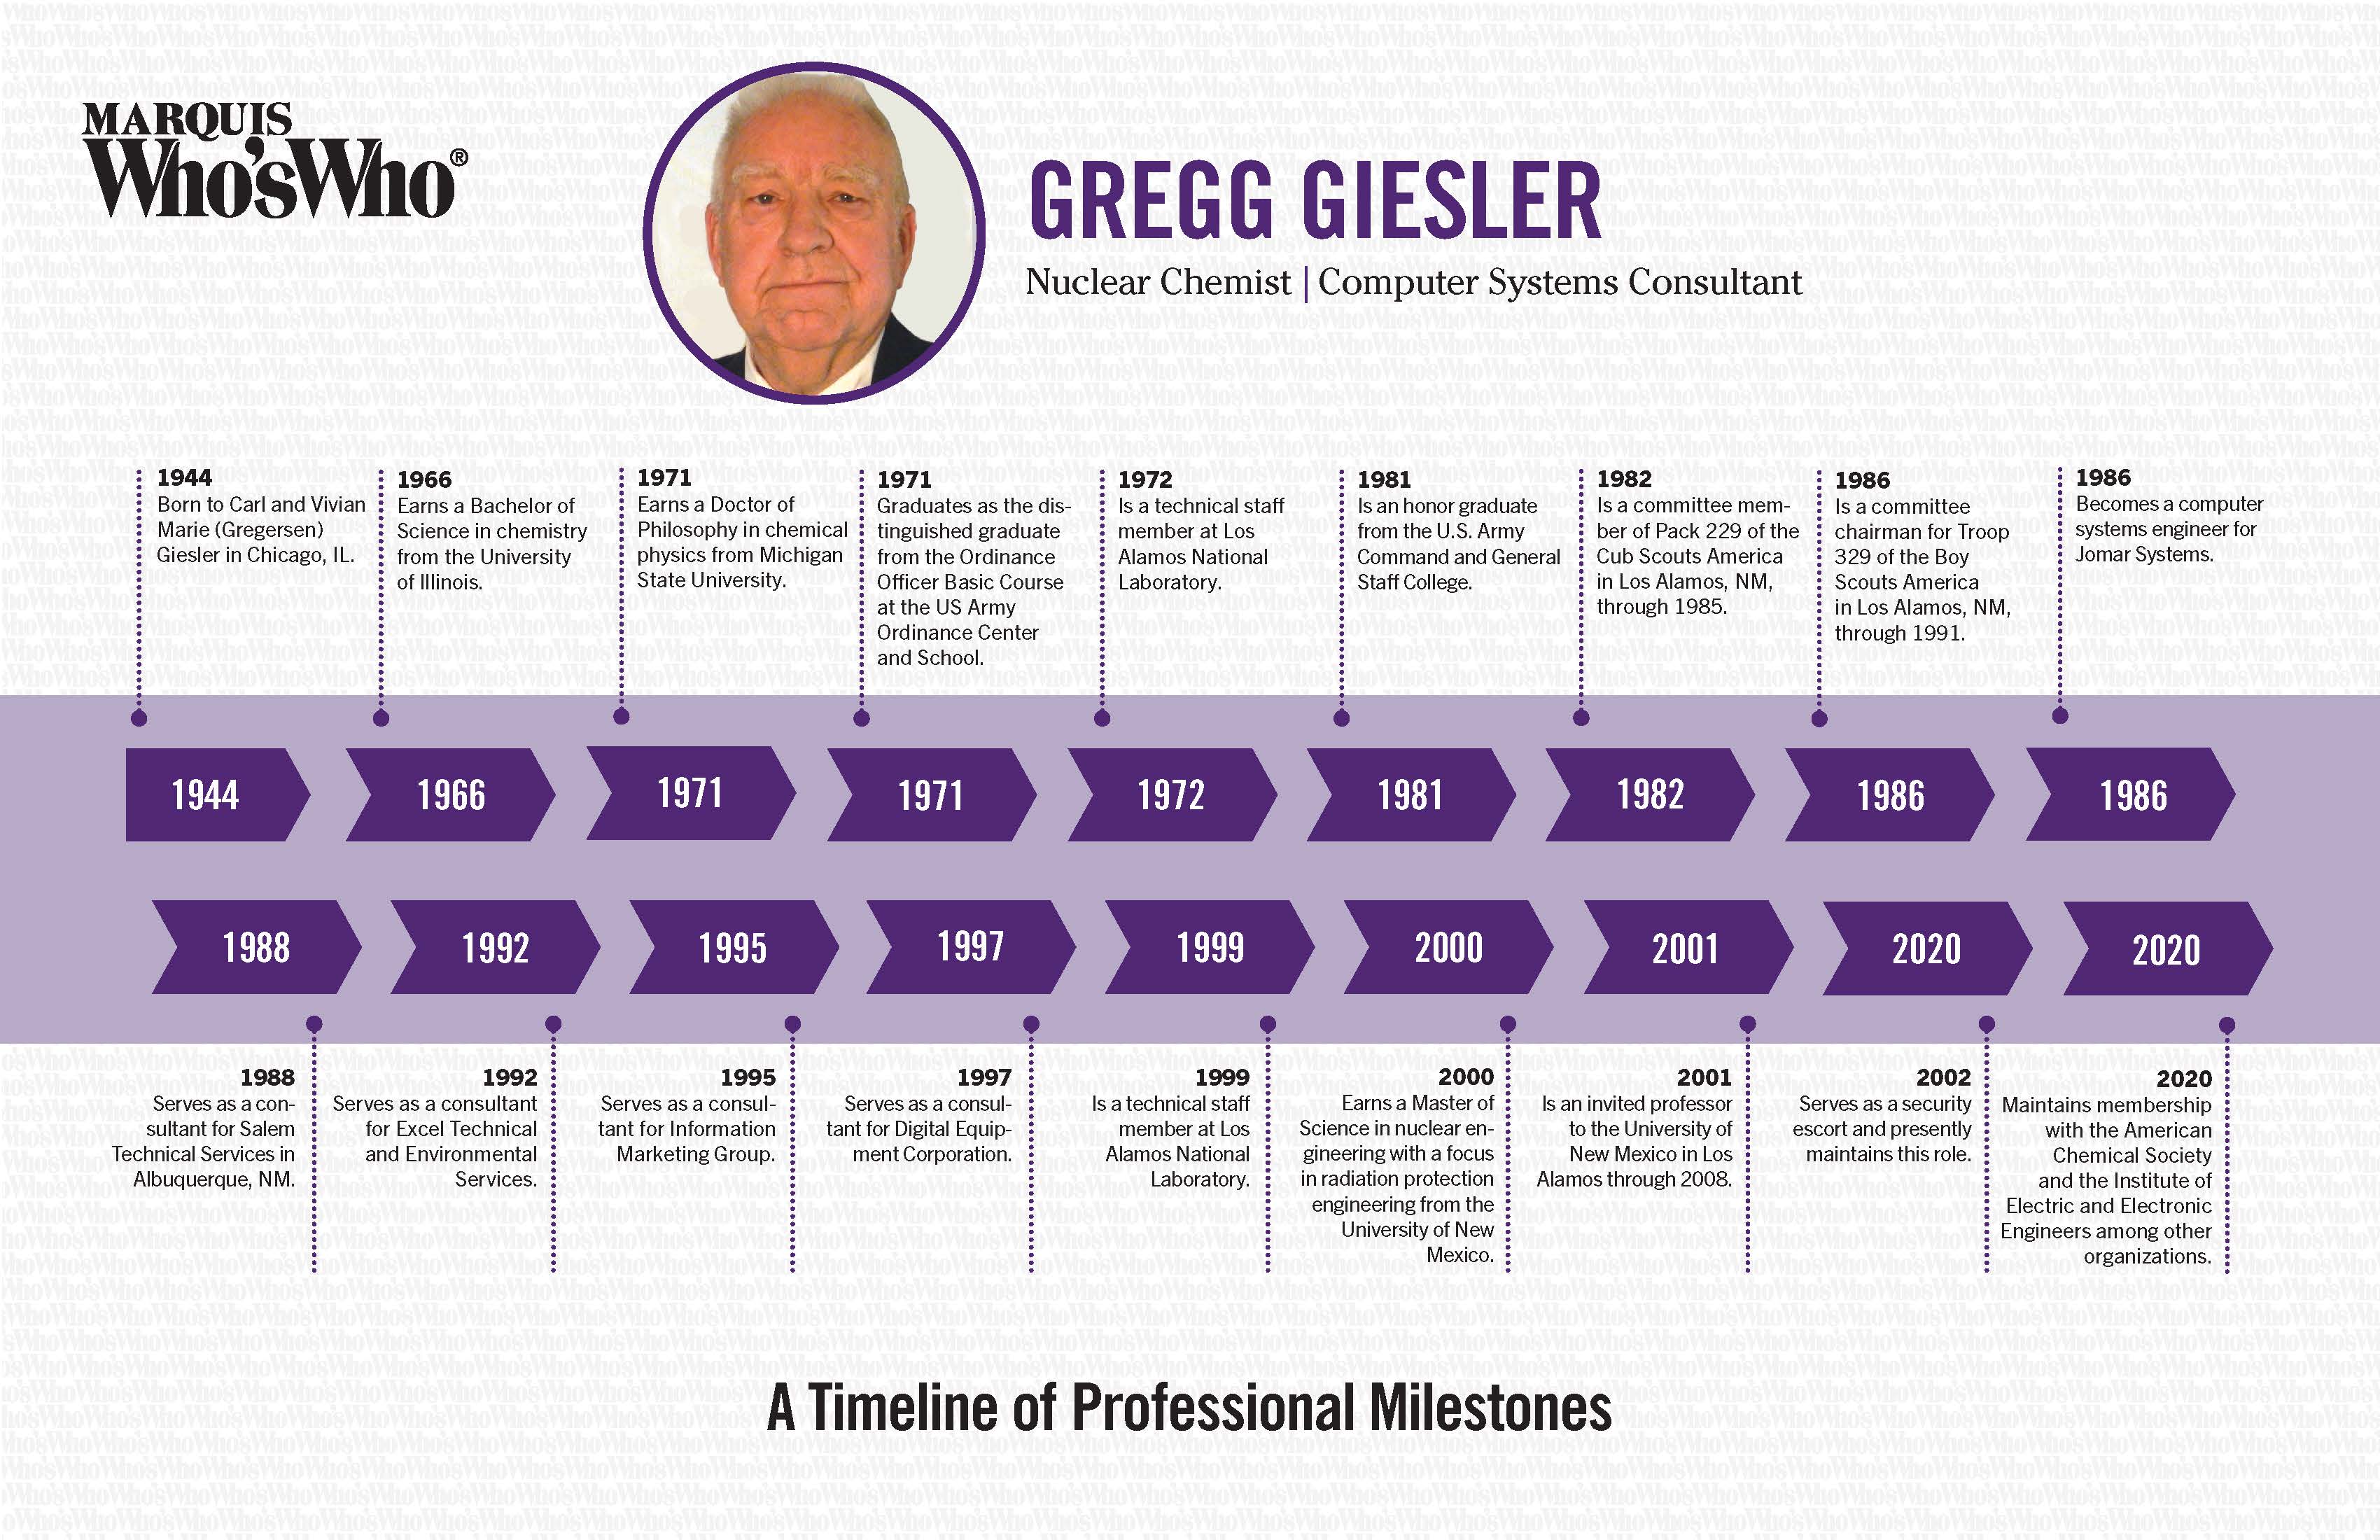 Gregg Giesler